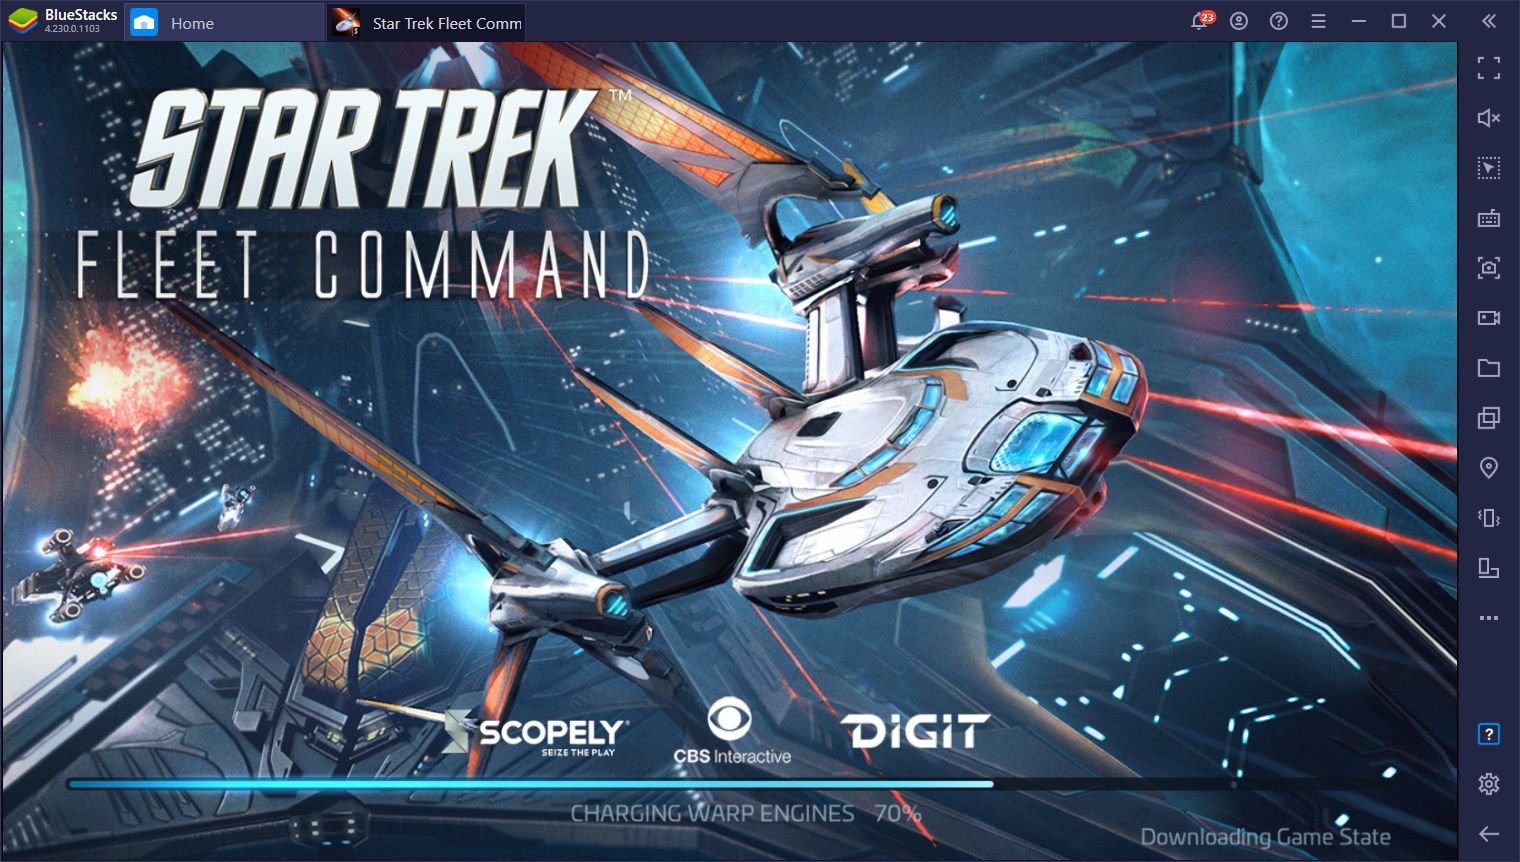 Star Trek Fleet Command September Update will Add Elements from the